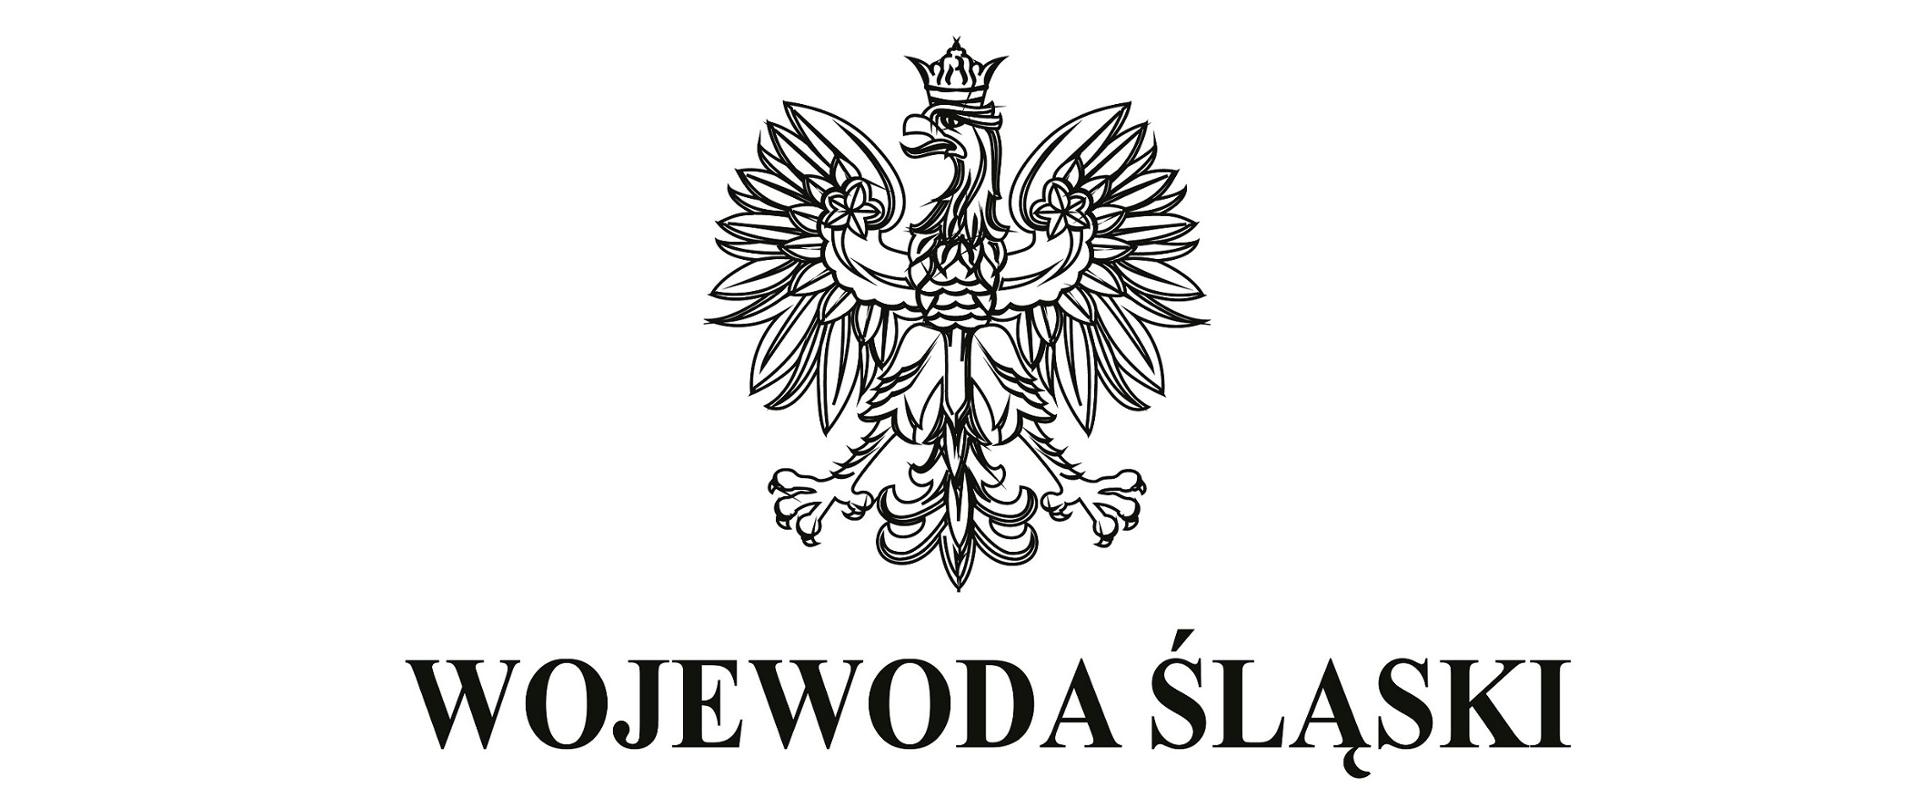 Godło Wojewody Śląskiego. Herb państwowy, poniżej napis WOJEWODA ŚLĄSKI 